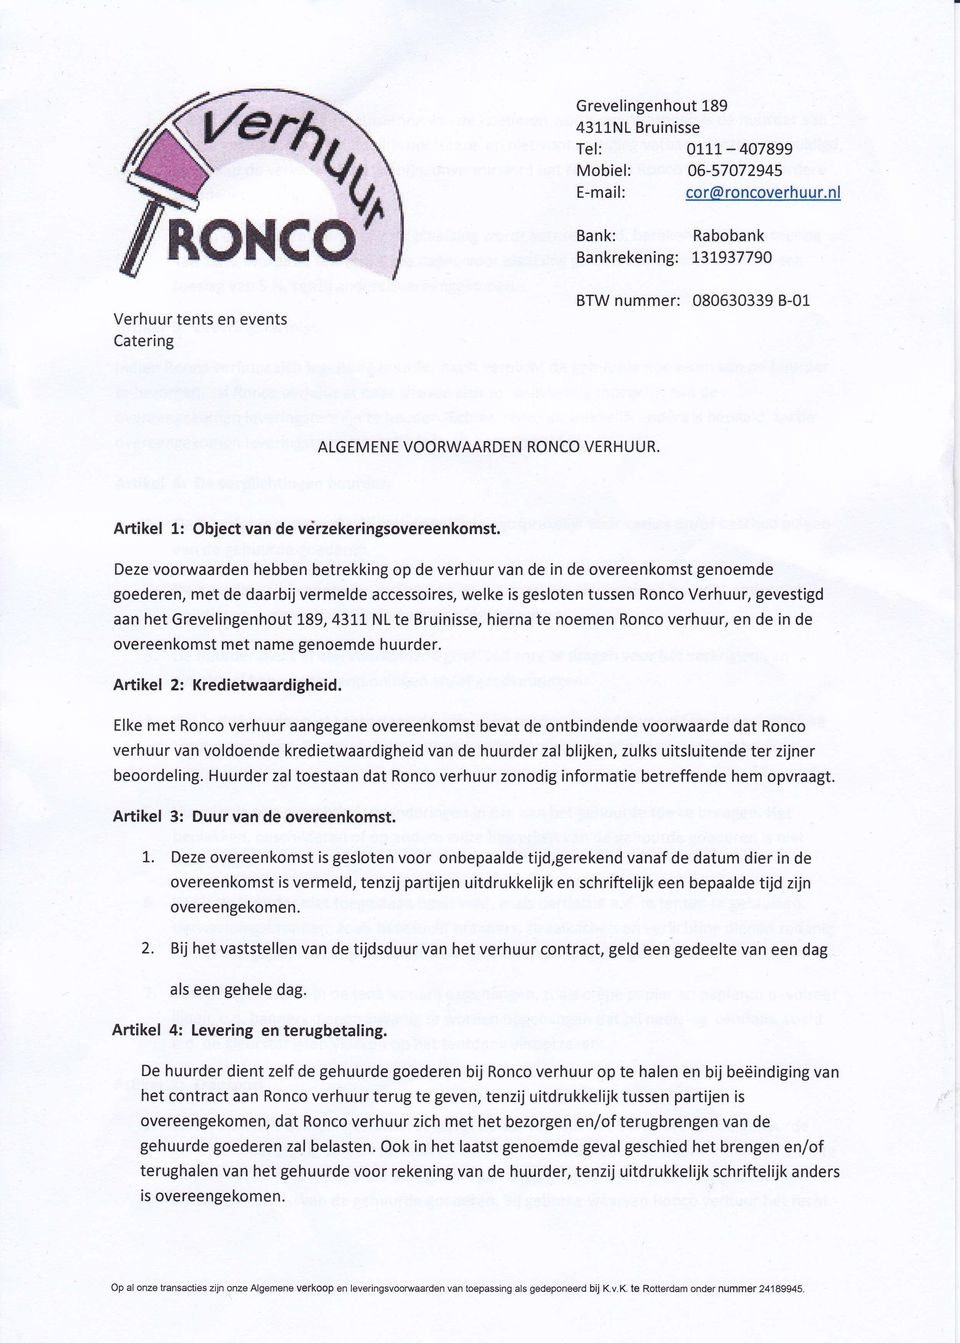 Deze voorwaarden hebben betrekking op de verhuur van de in de overeenkomst genoemde goederen, met de daarbij vermelde accessoires, welke is gesloten tussen Ronco Verhuur, gevestigd aan het